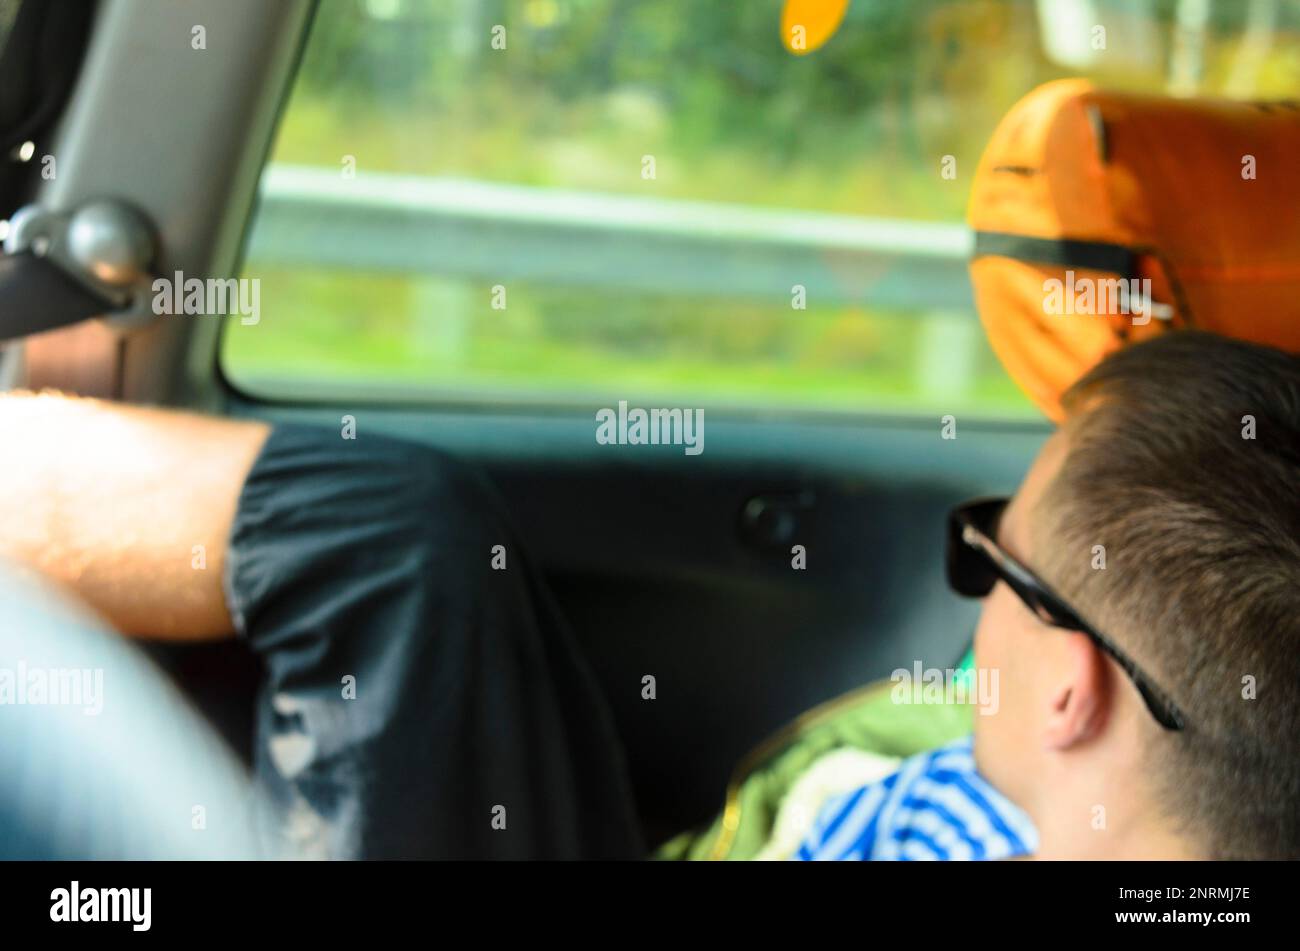 Flou de mise au point photo d'un homme au repos dans des lunettes sombres regardant à travers la fenêtre d'une voiture dans le siège arrière parmi les choses touristiques. Banque D'Images